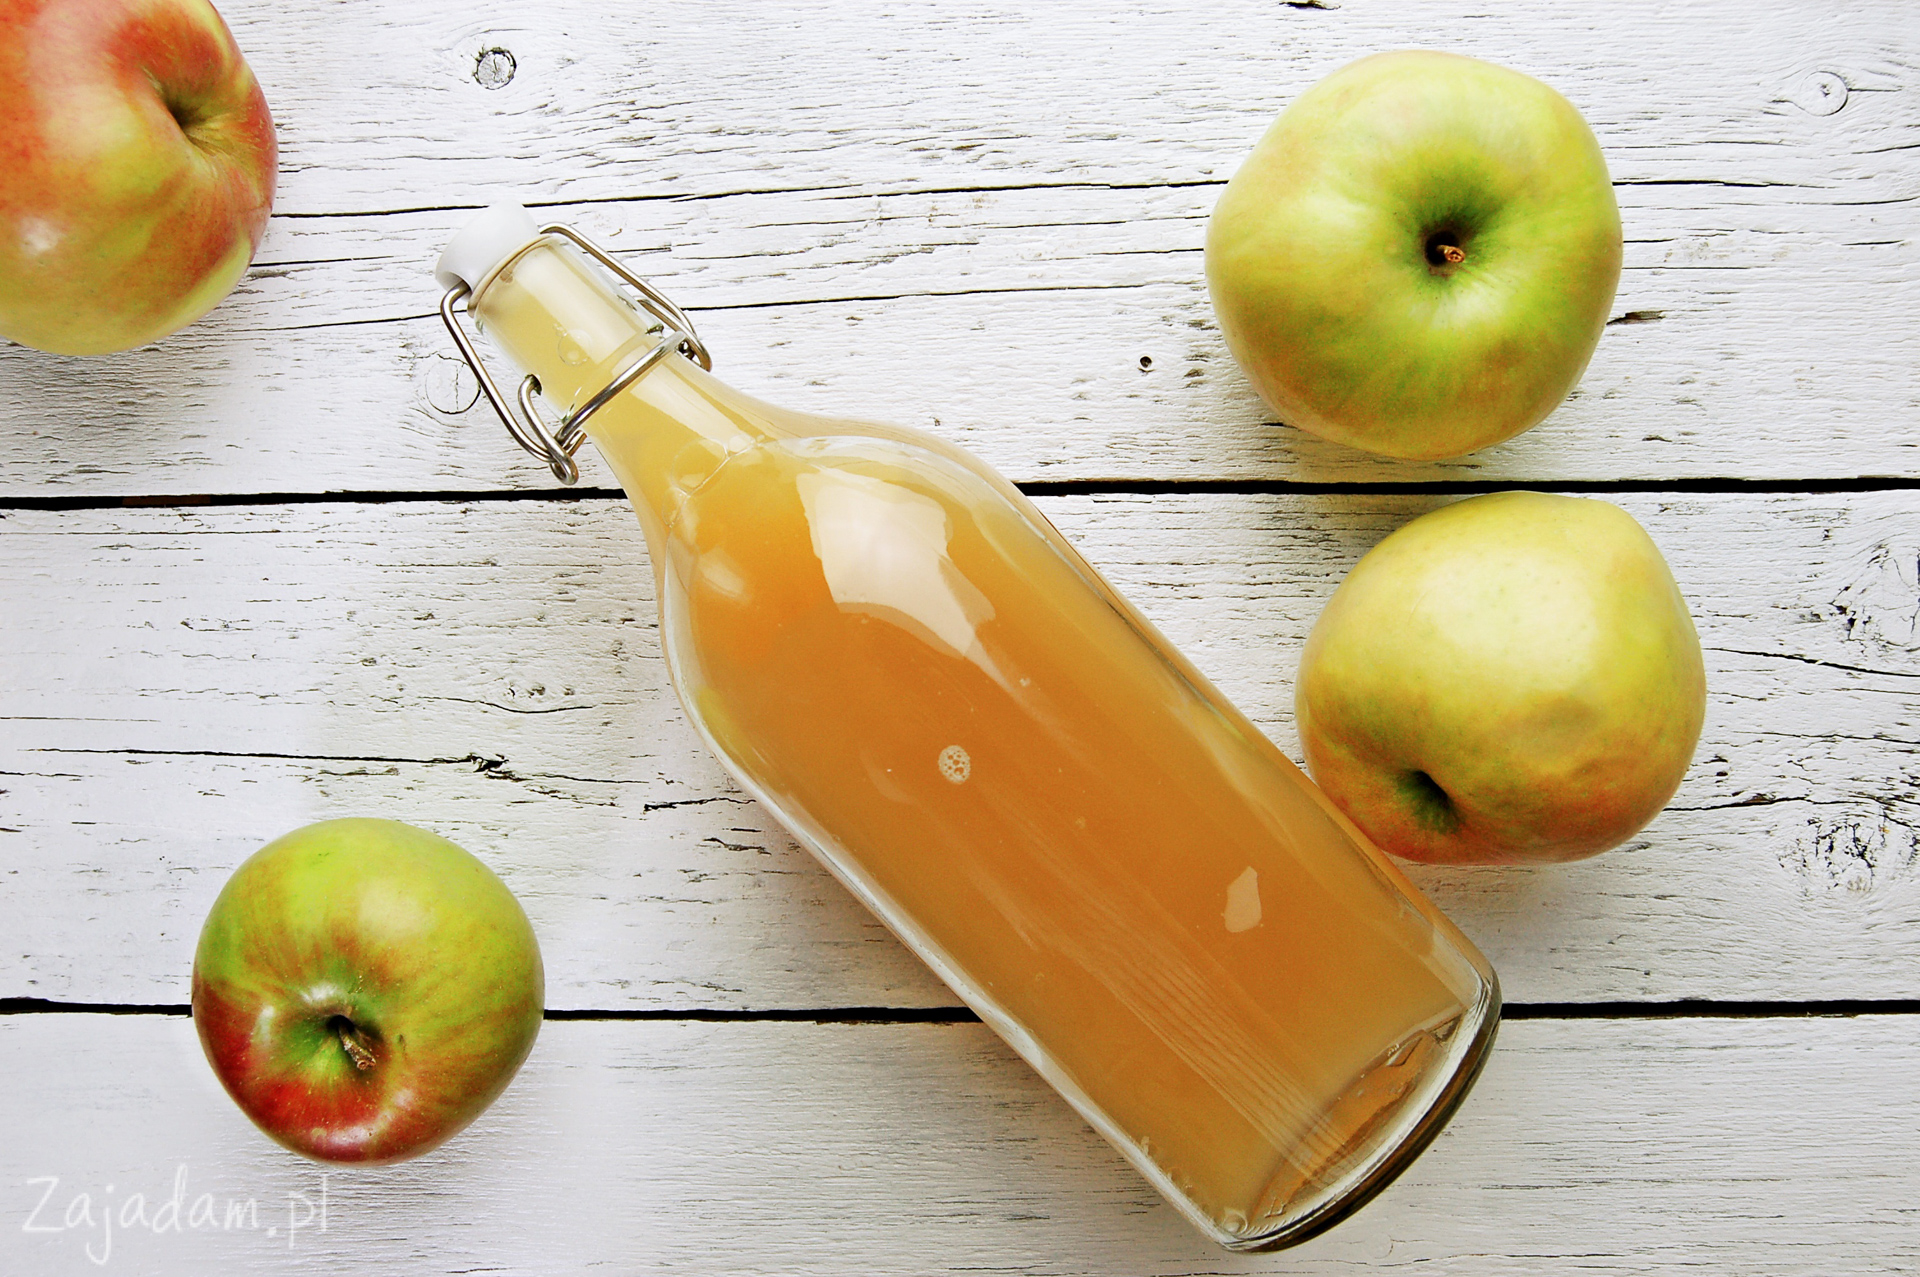 Как правильно принимать яблочный уксус домашний